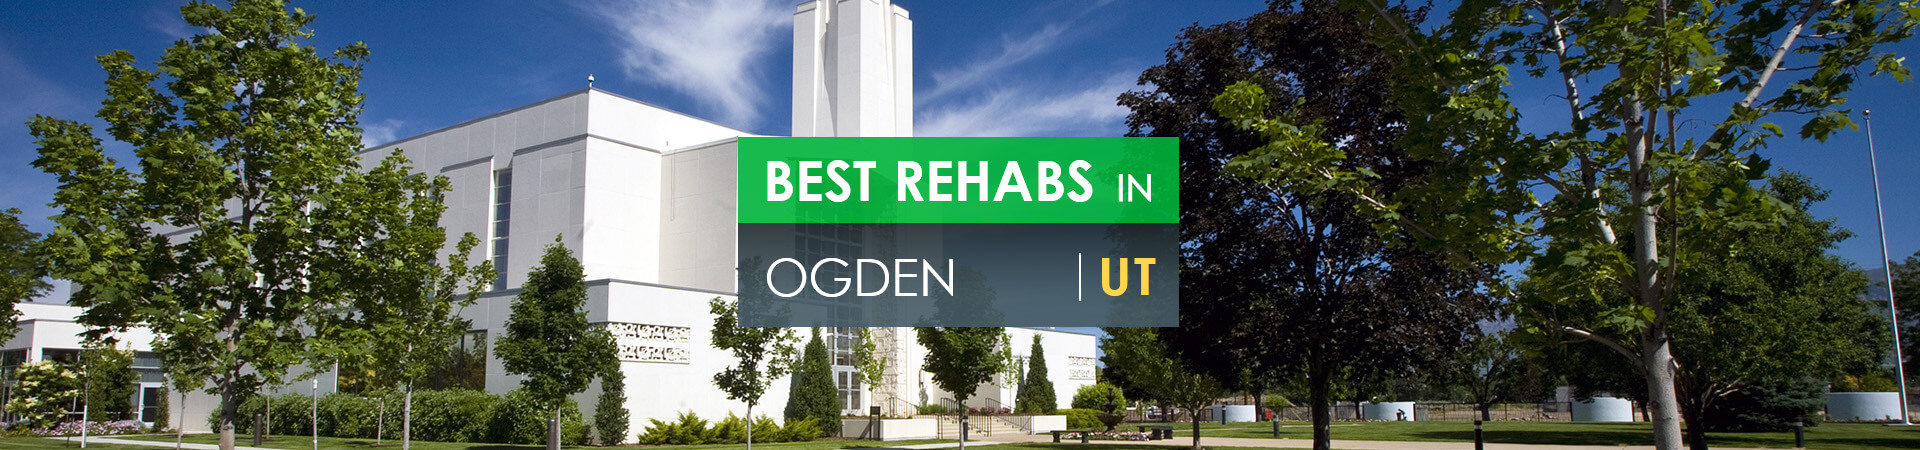 Best rehabs in Ogden, UT